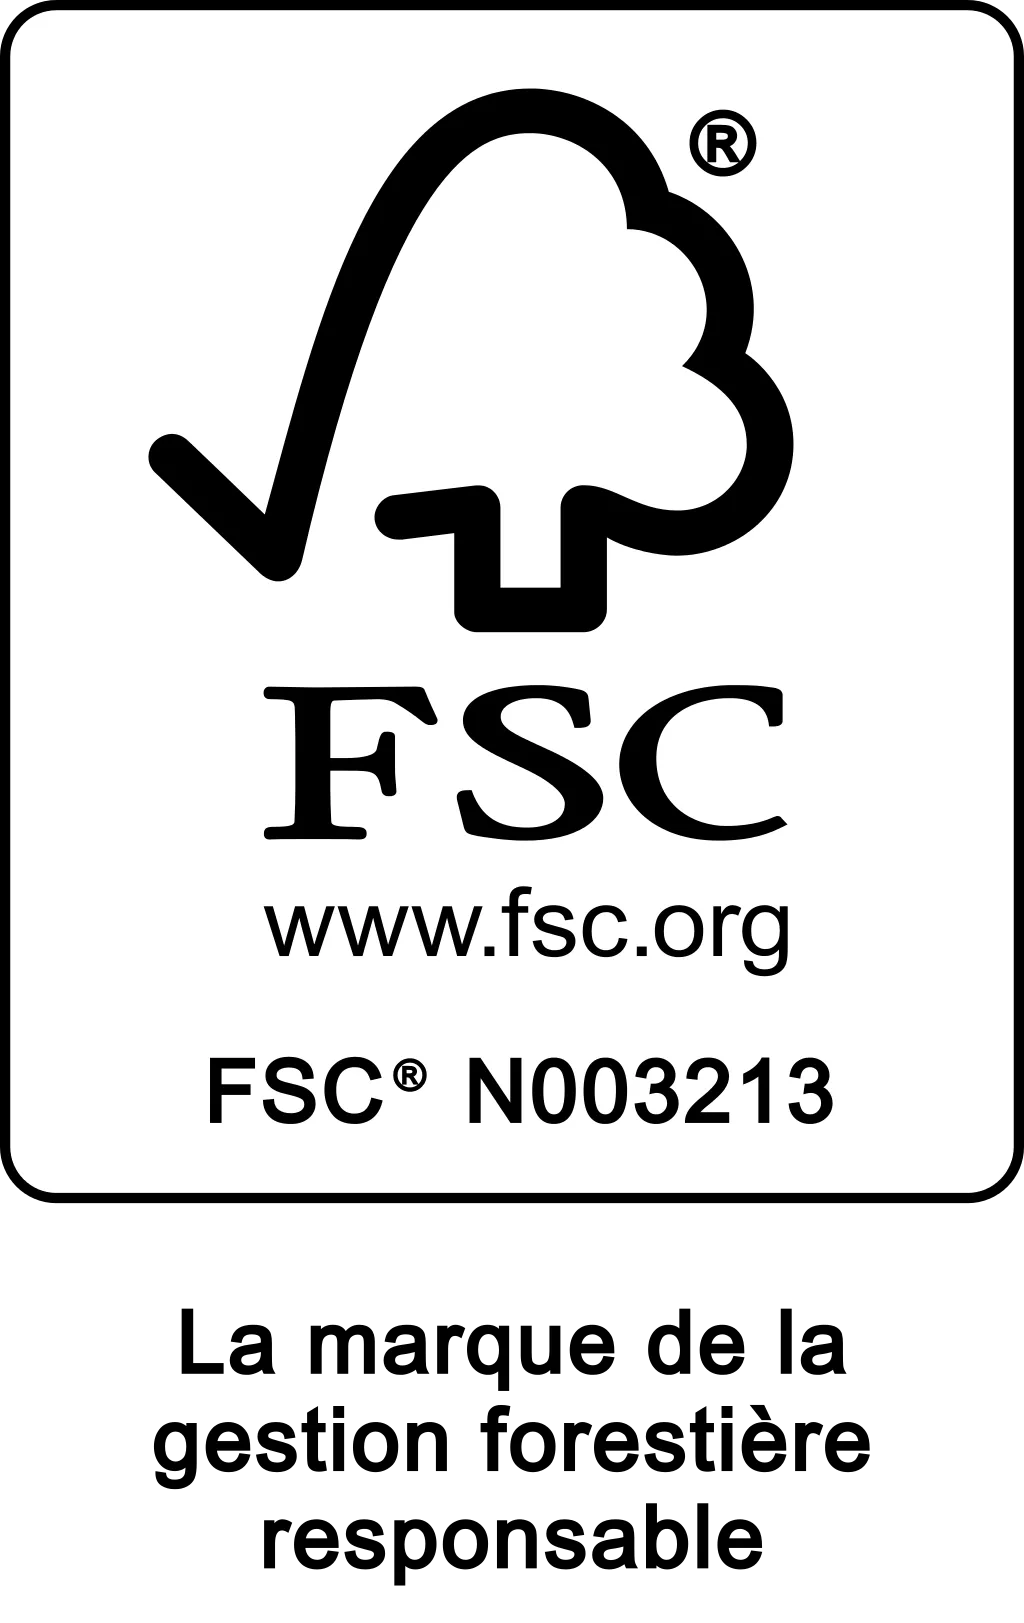 FSC - La marque de la gestion forestière responsable